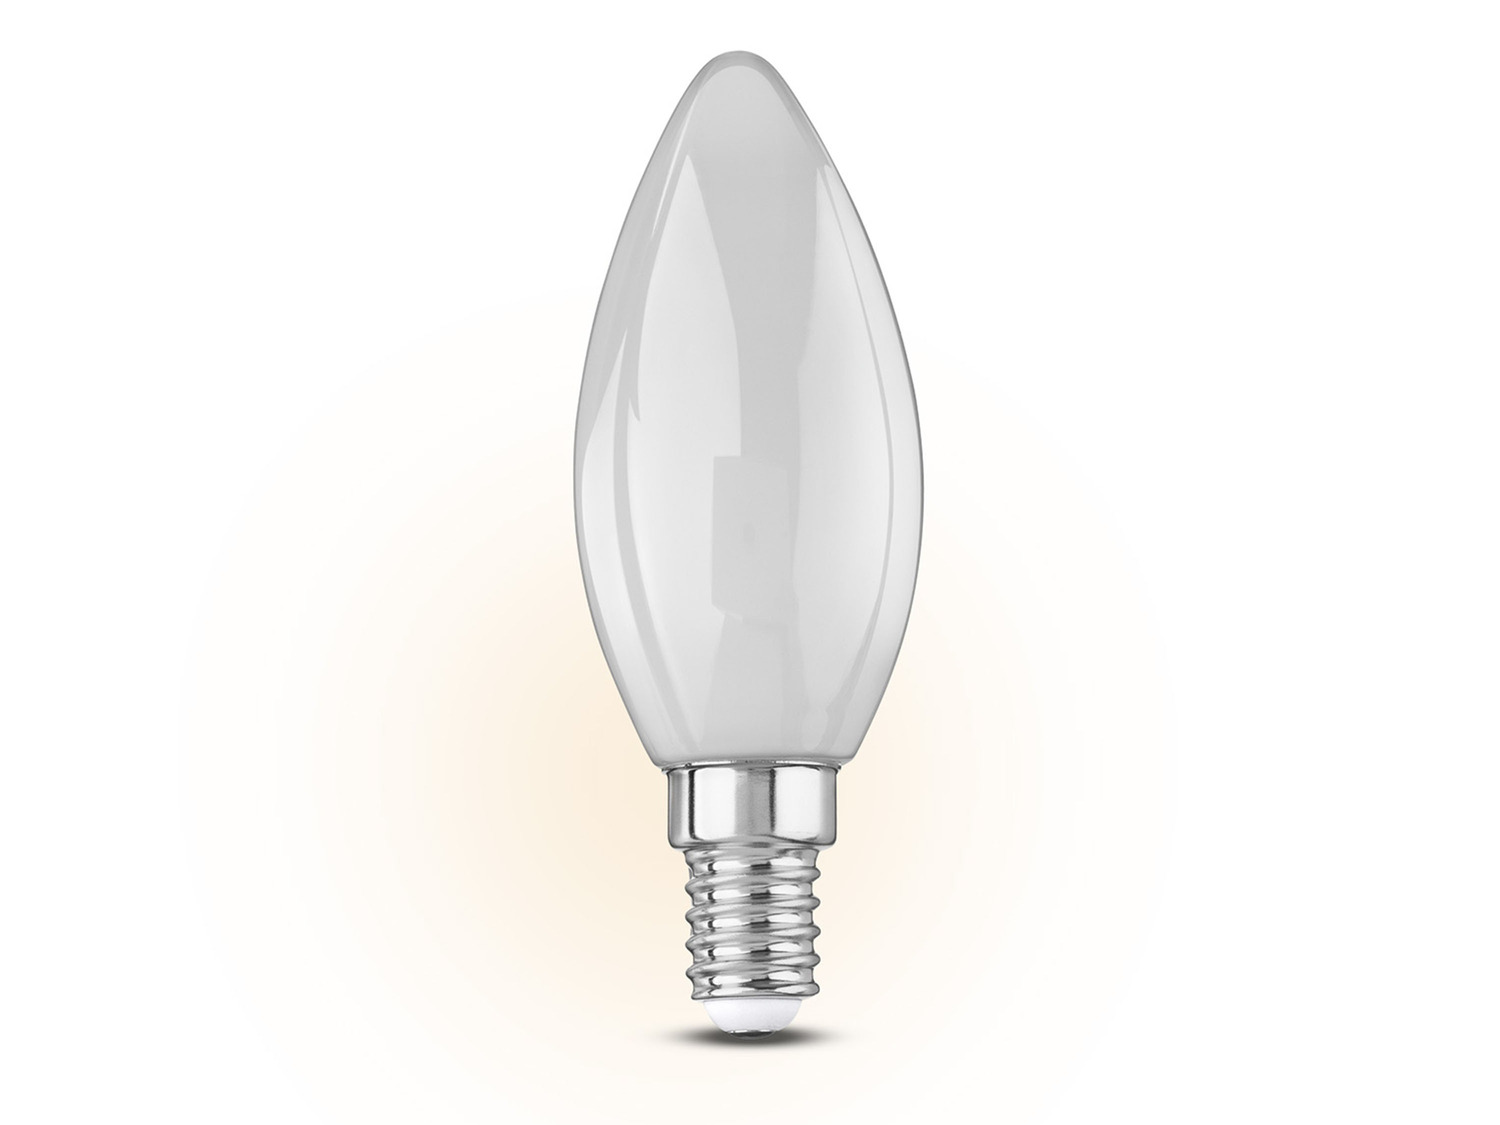 Ampoule bougie LED E14 RVB et blanc 470 lm à intensité variable